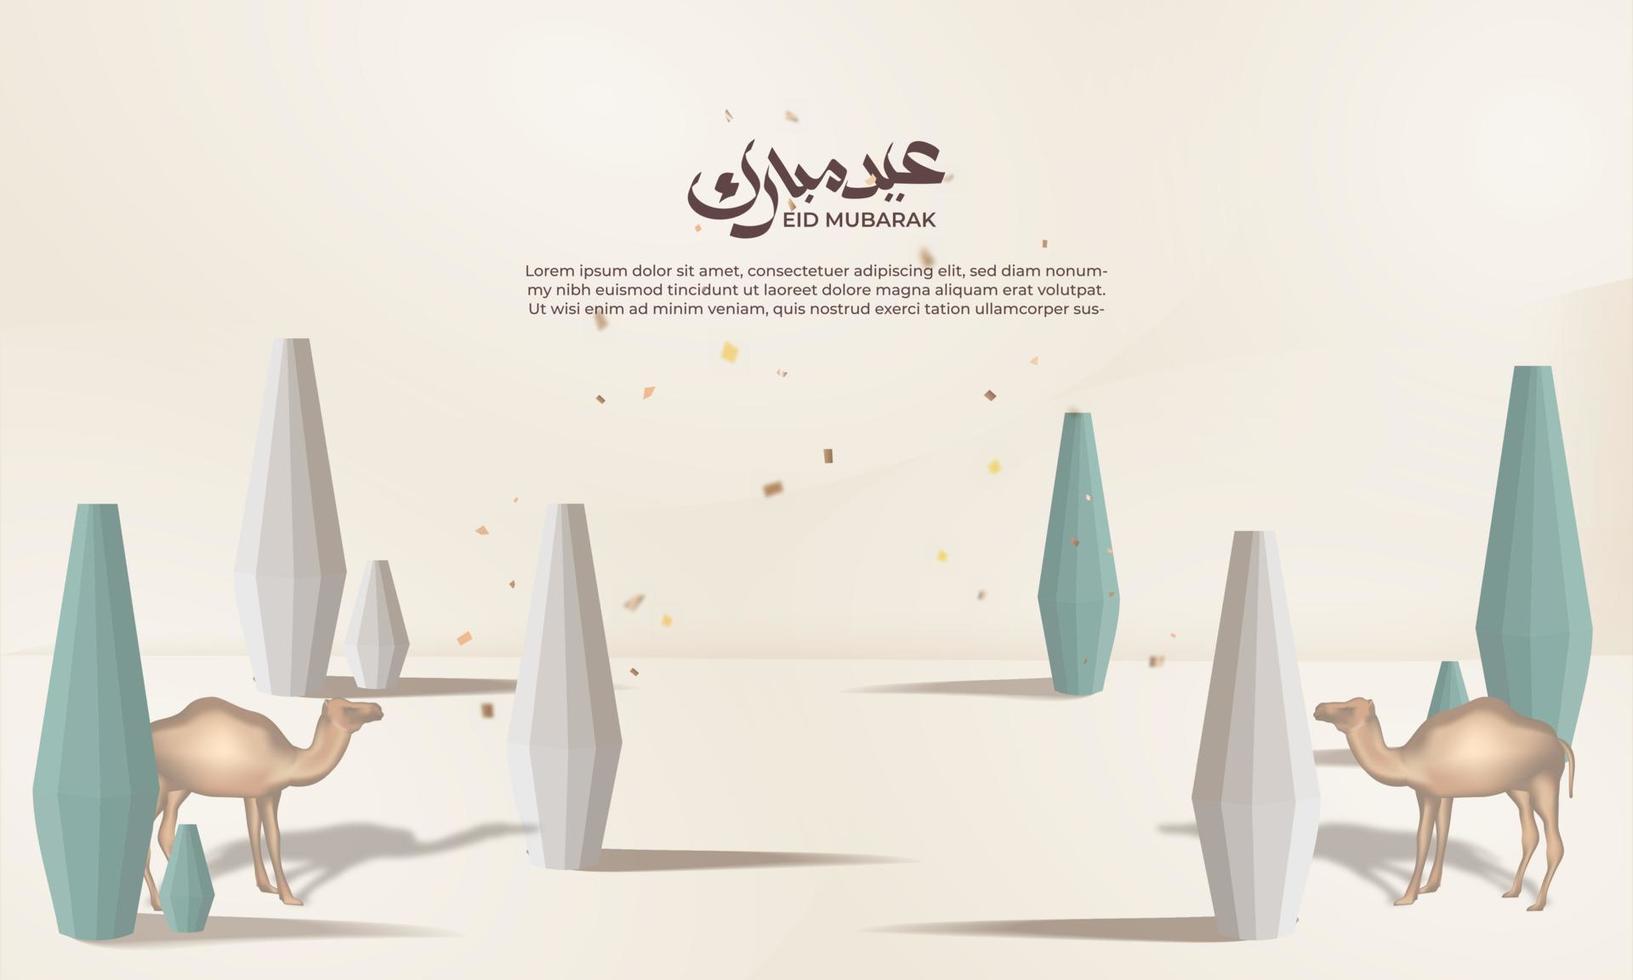 realistisch Ramadan achtergrond met lantaarn, voor banier, groet kaart vector